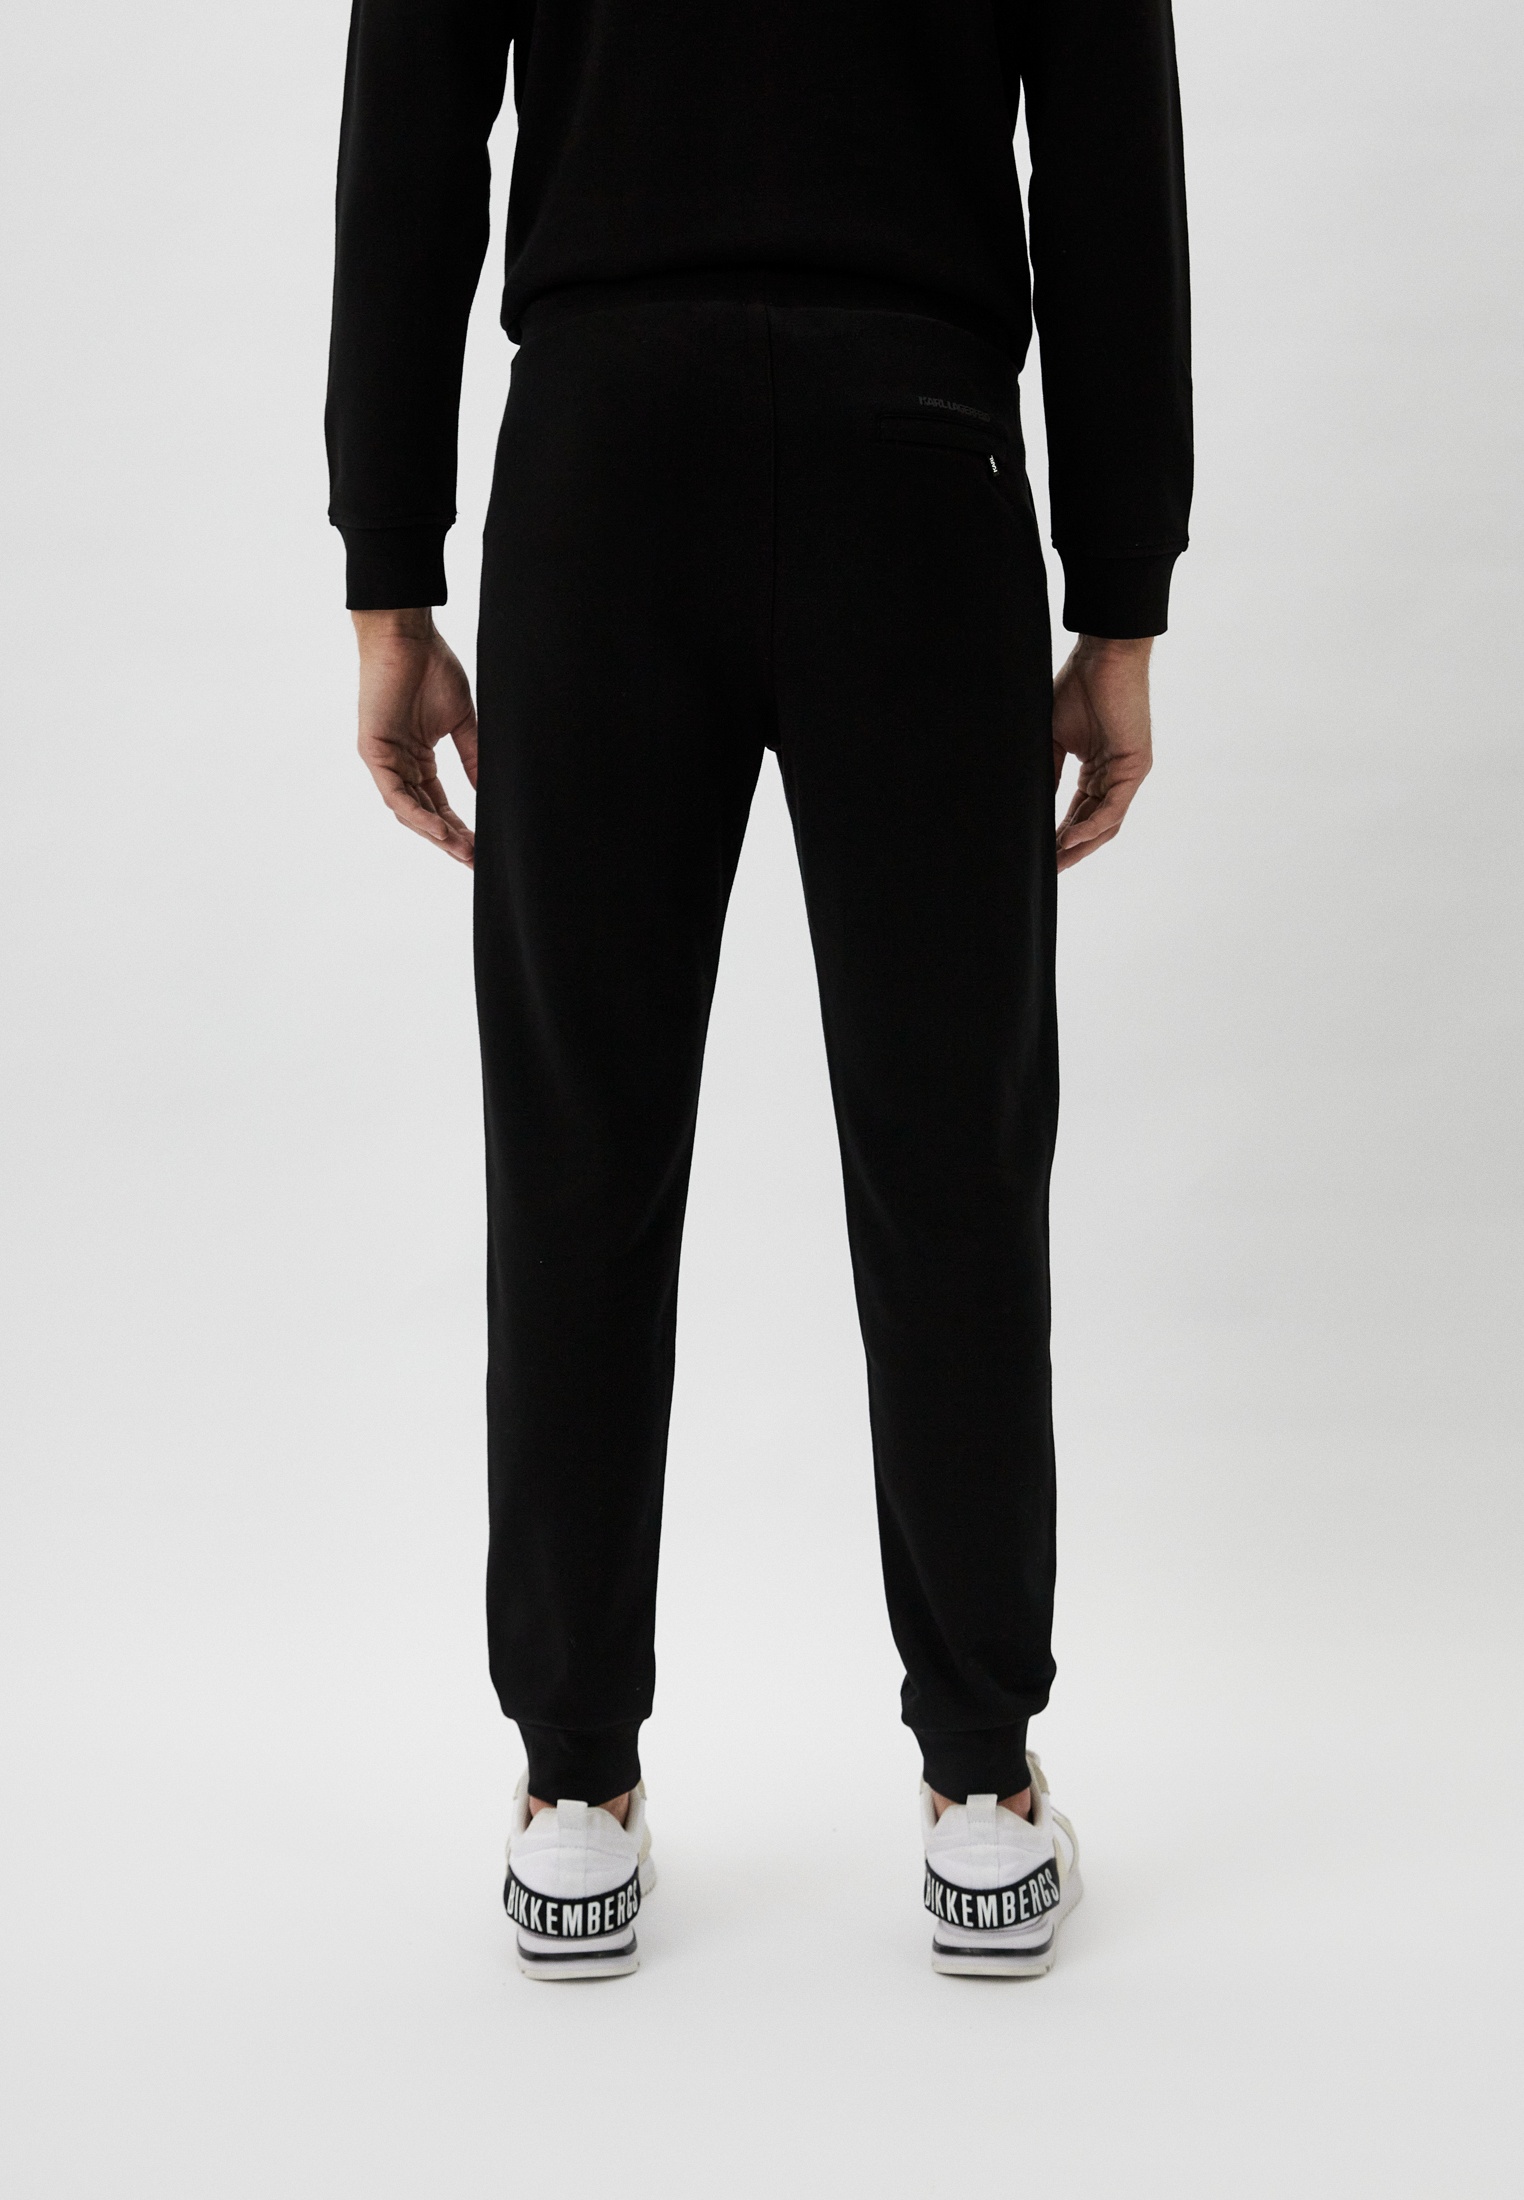 Мужские спортивные брюки Karl Lagerfeld (Карл Лагерфельд) 705406-541900: изображение 3